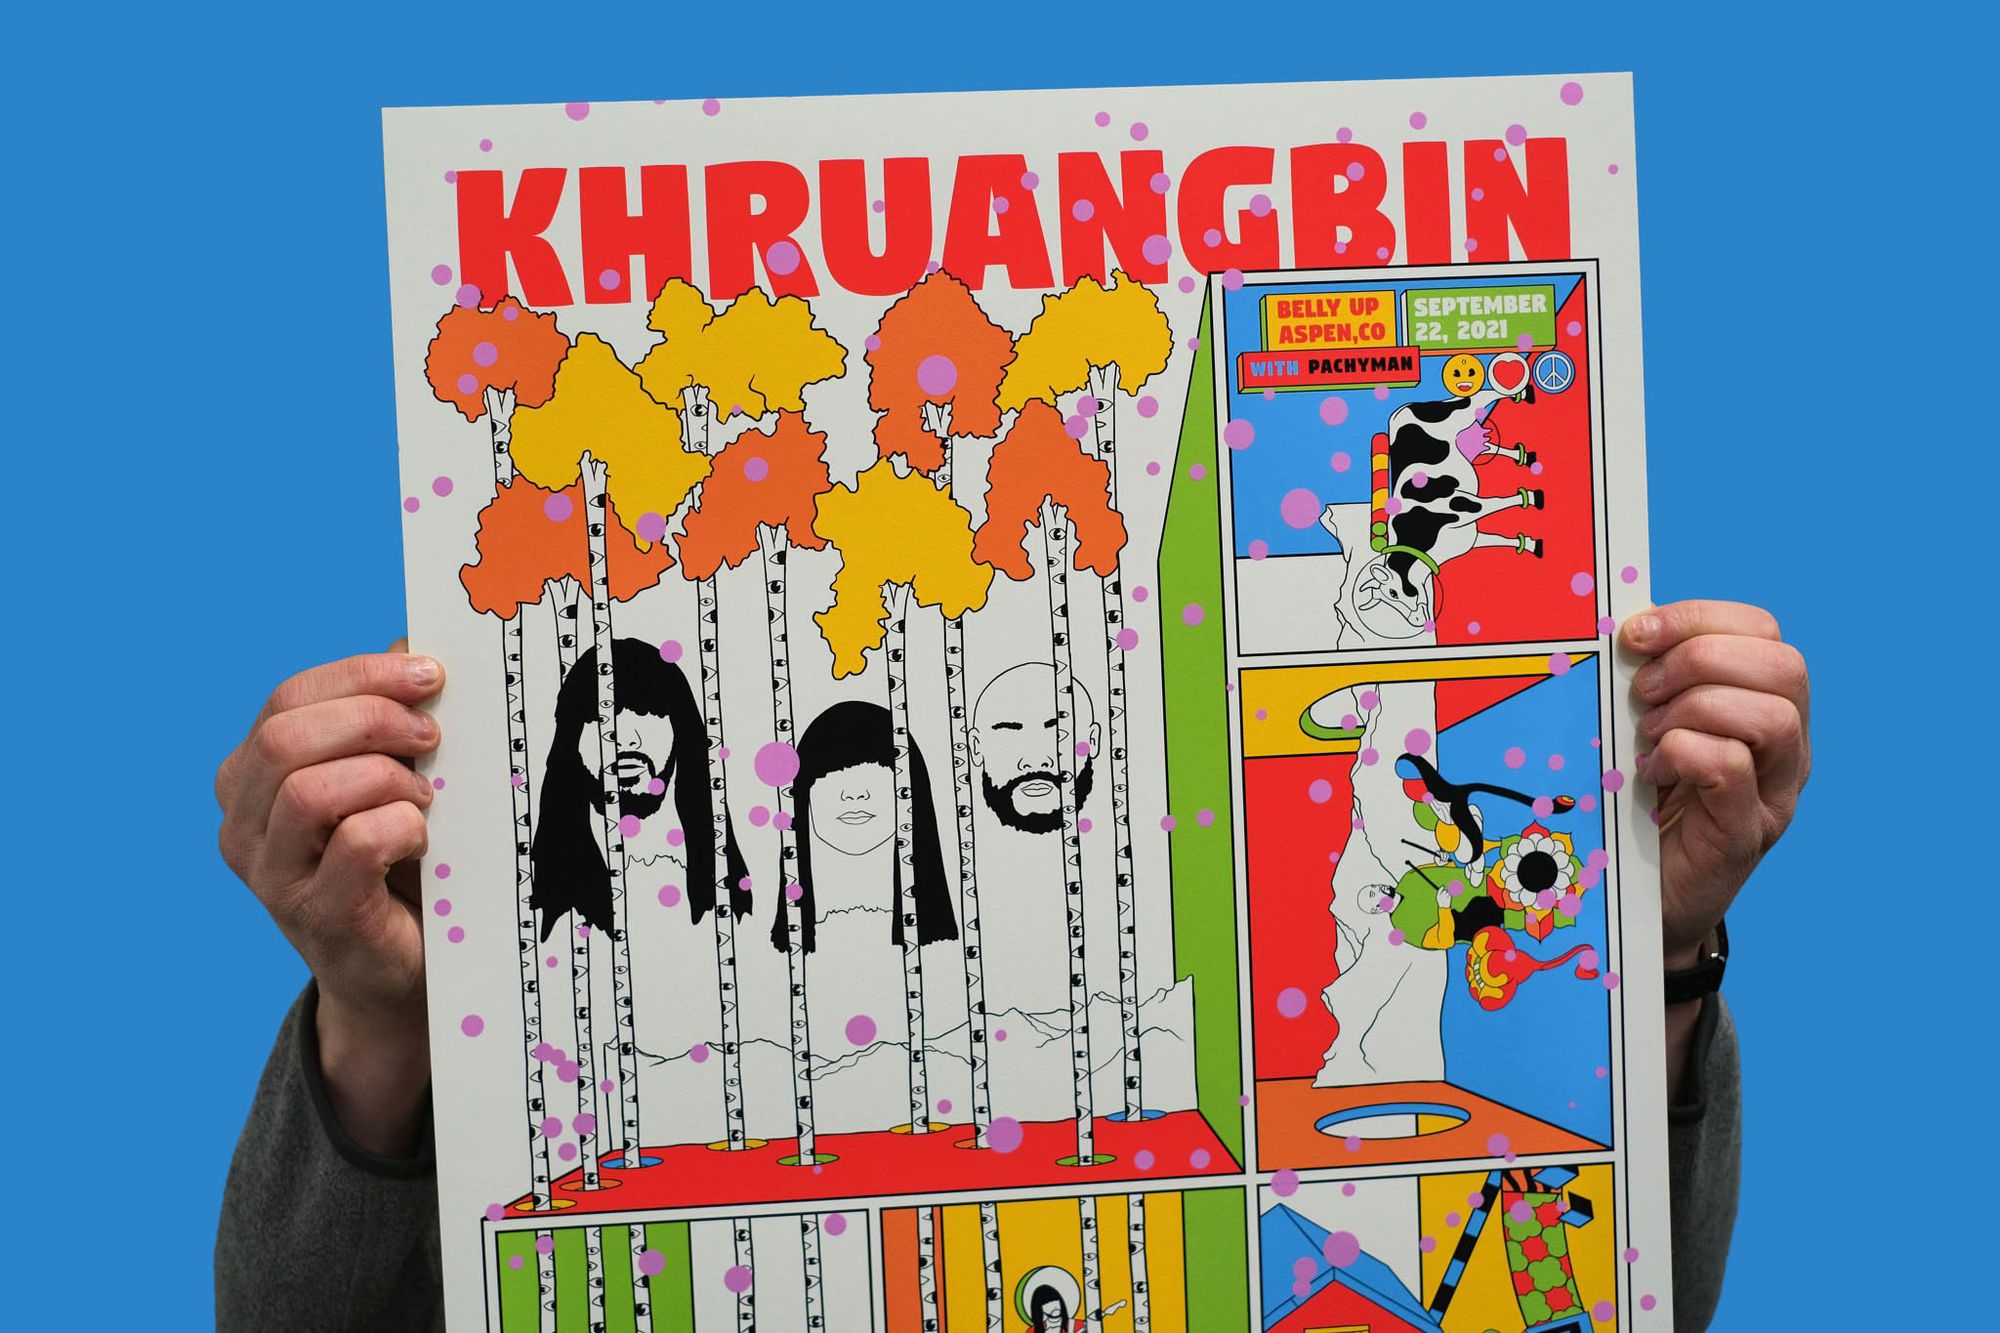 KHRUANGBIN gig poster by MURUGIAH